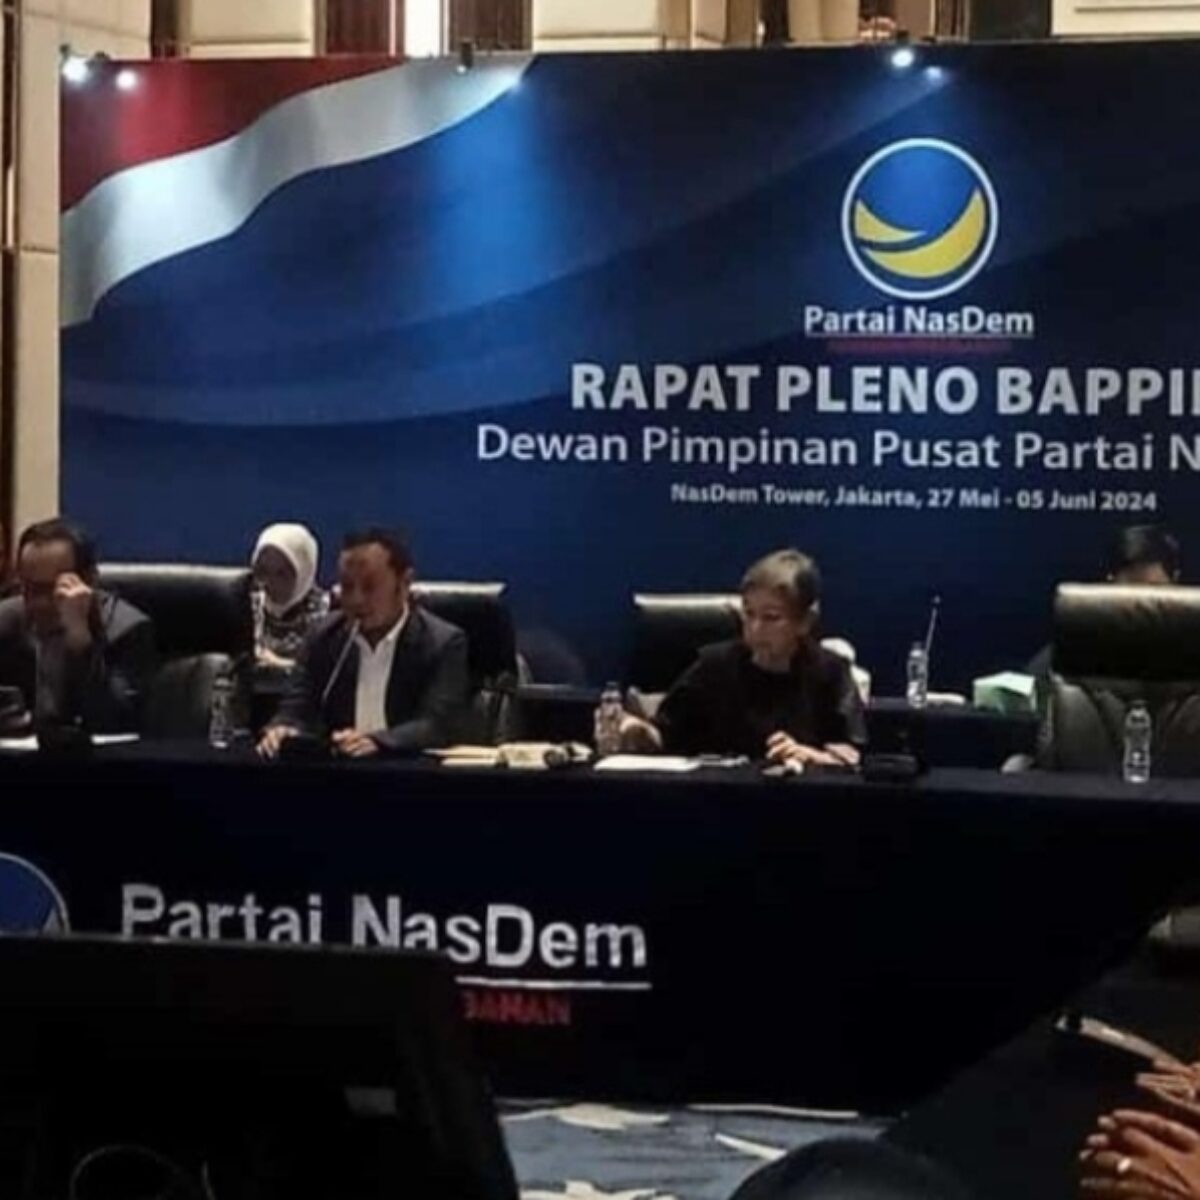 Rapat pleno penetapan rekomendasi dari Partai Nasdem untuk sejumlah calon kepala daerah di Jatim, Rabu (29/5/2024). (Redaksi/kabarterdepan.com)